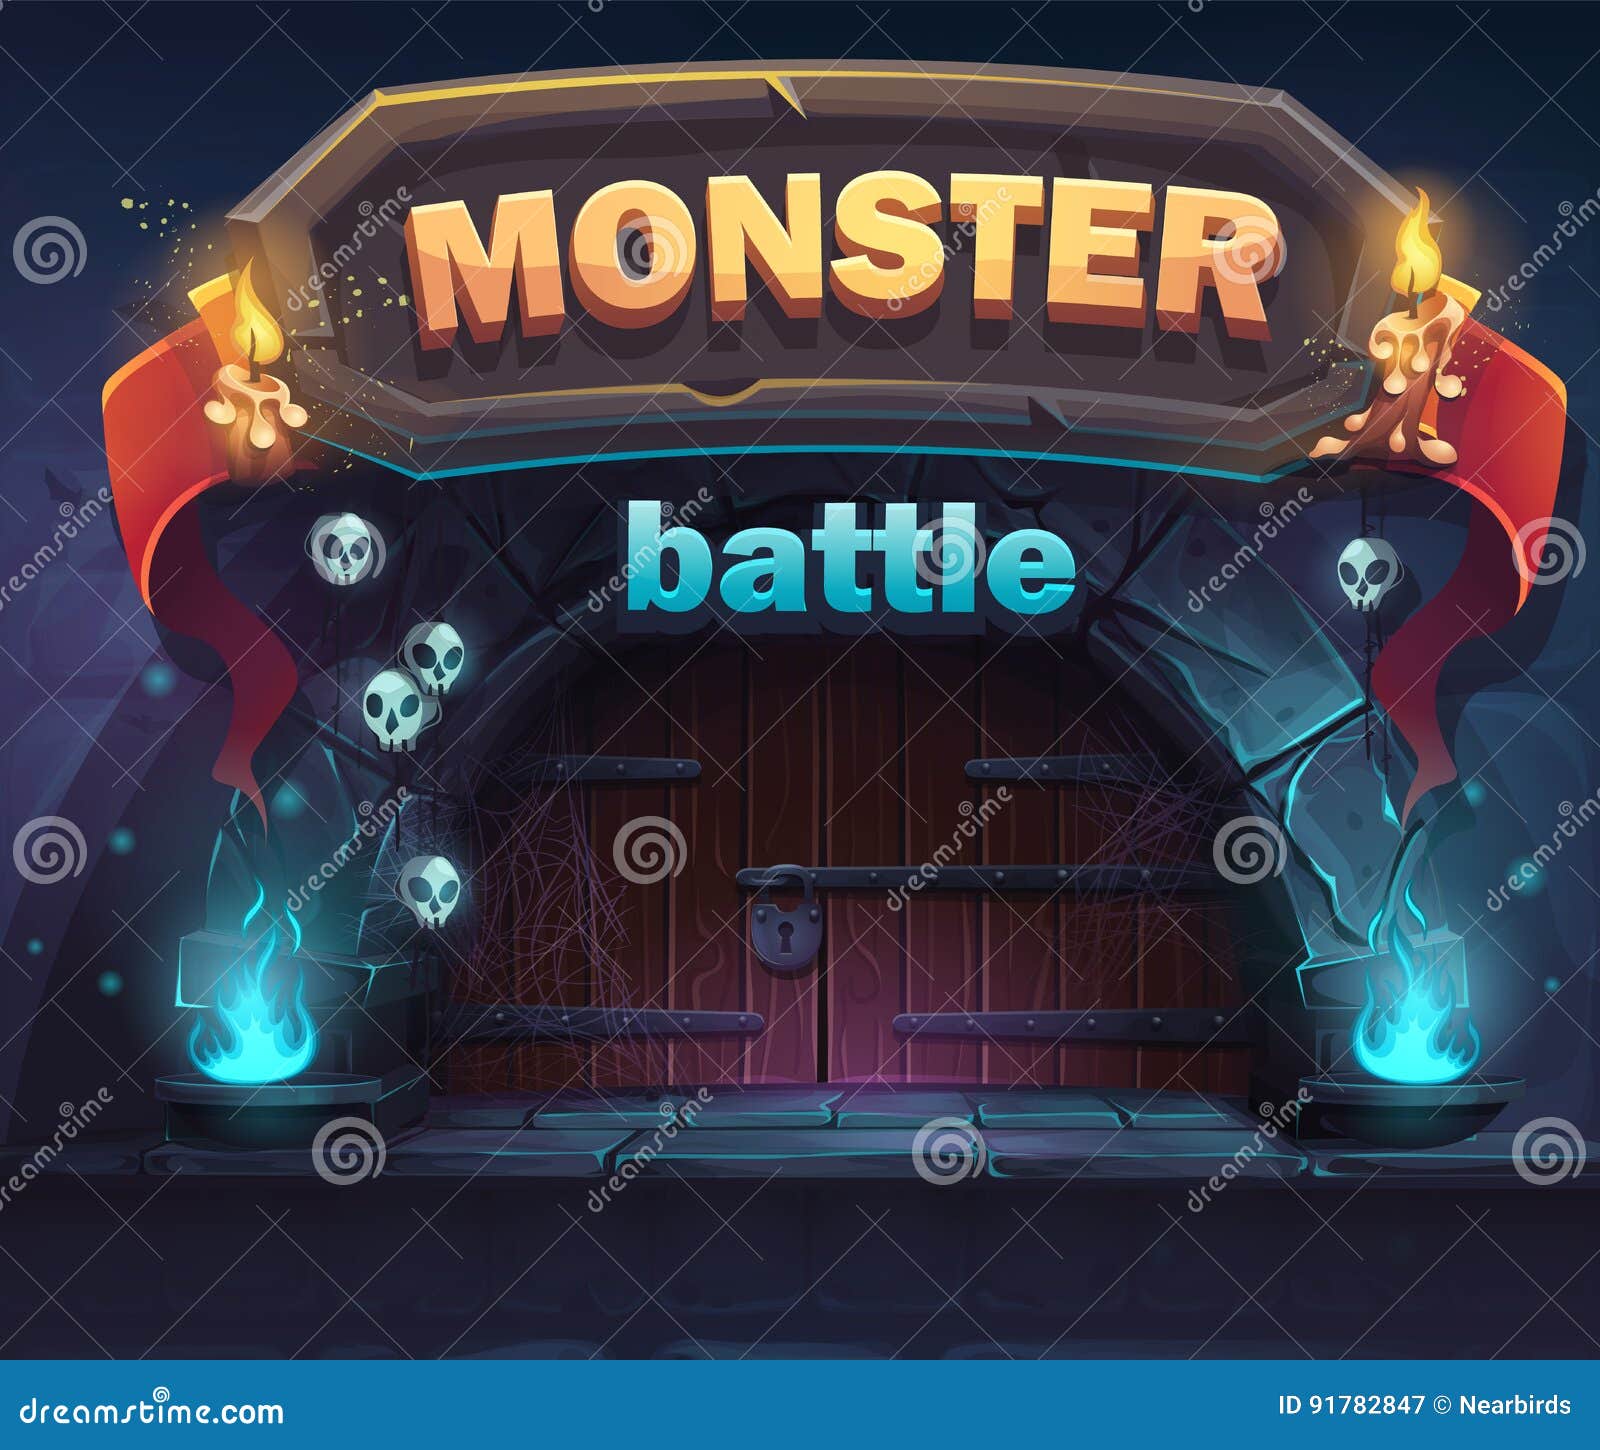 monster battle gui boot window